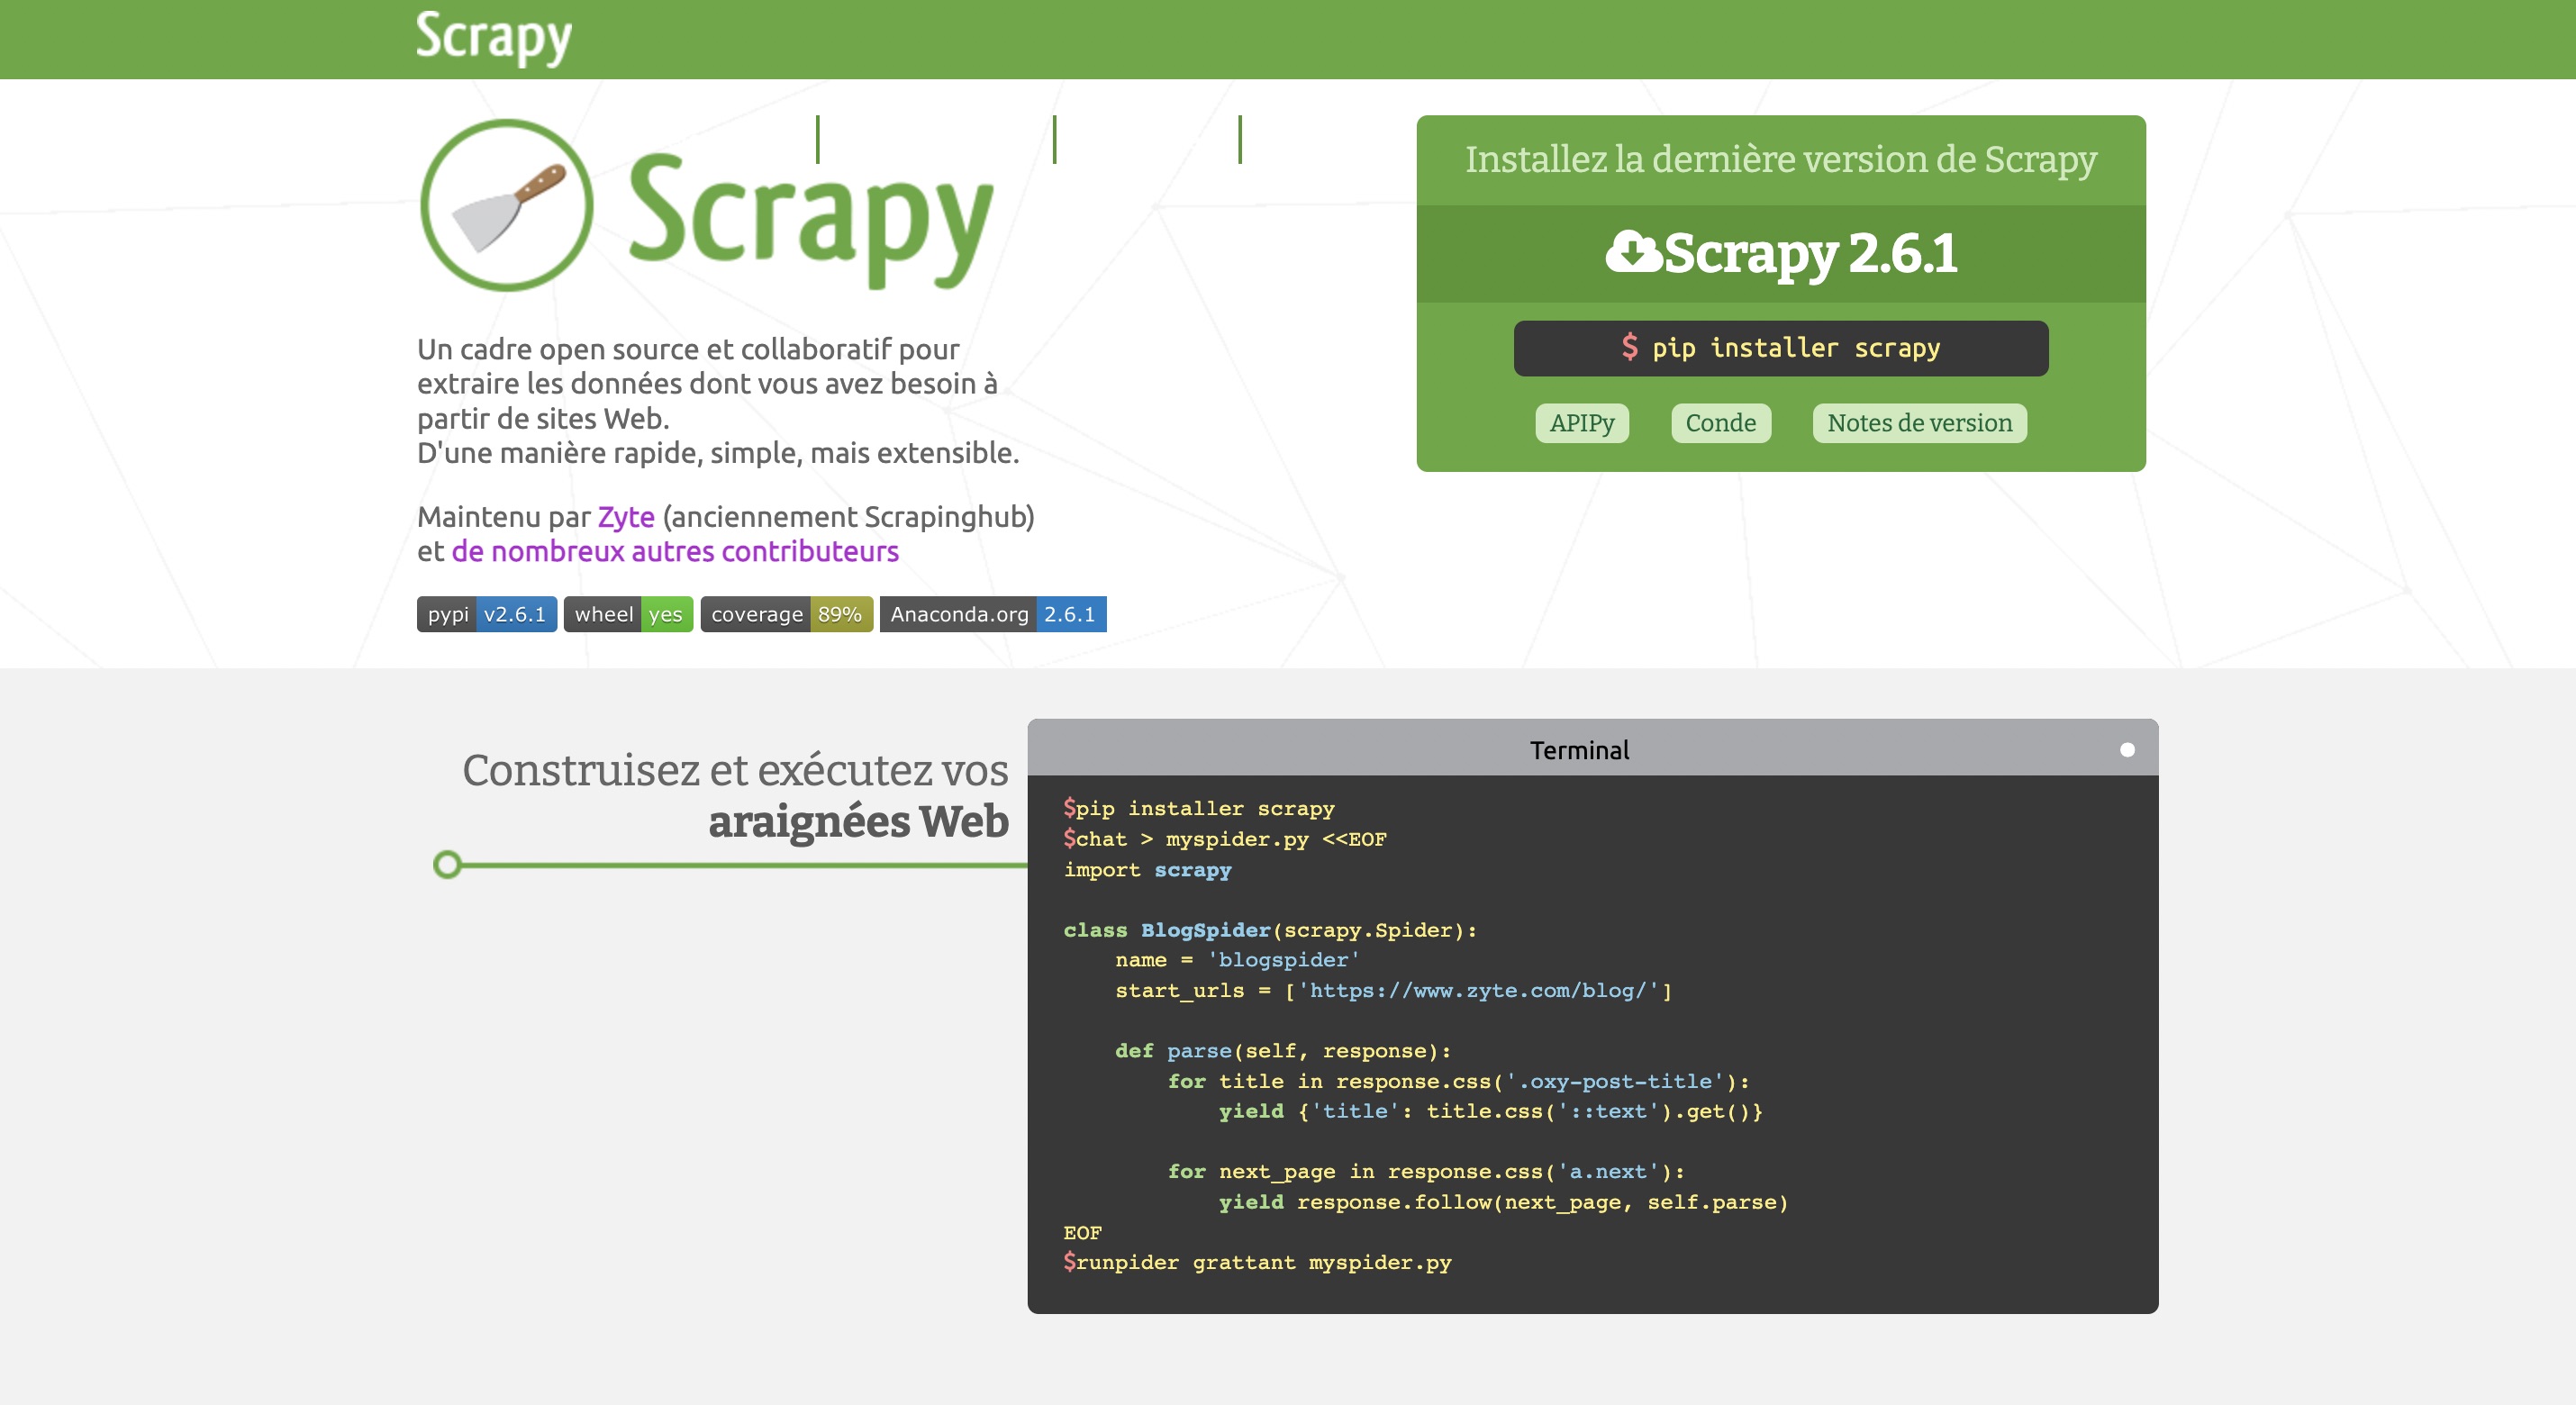 Scrapy : site de scraping web